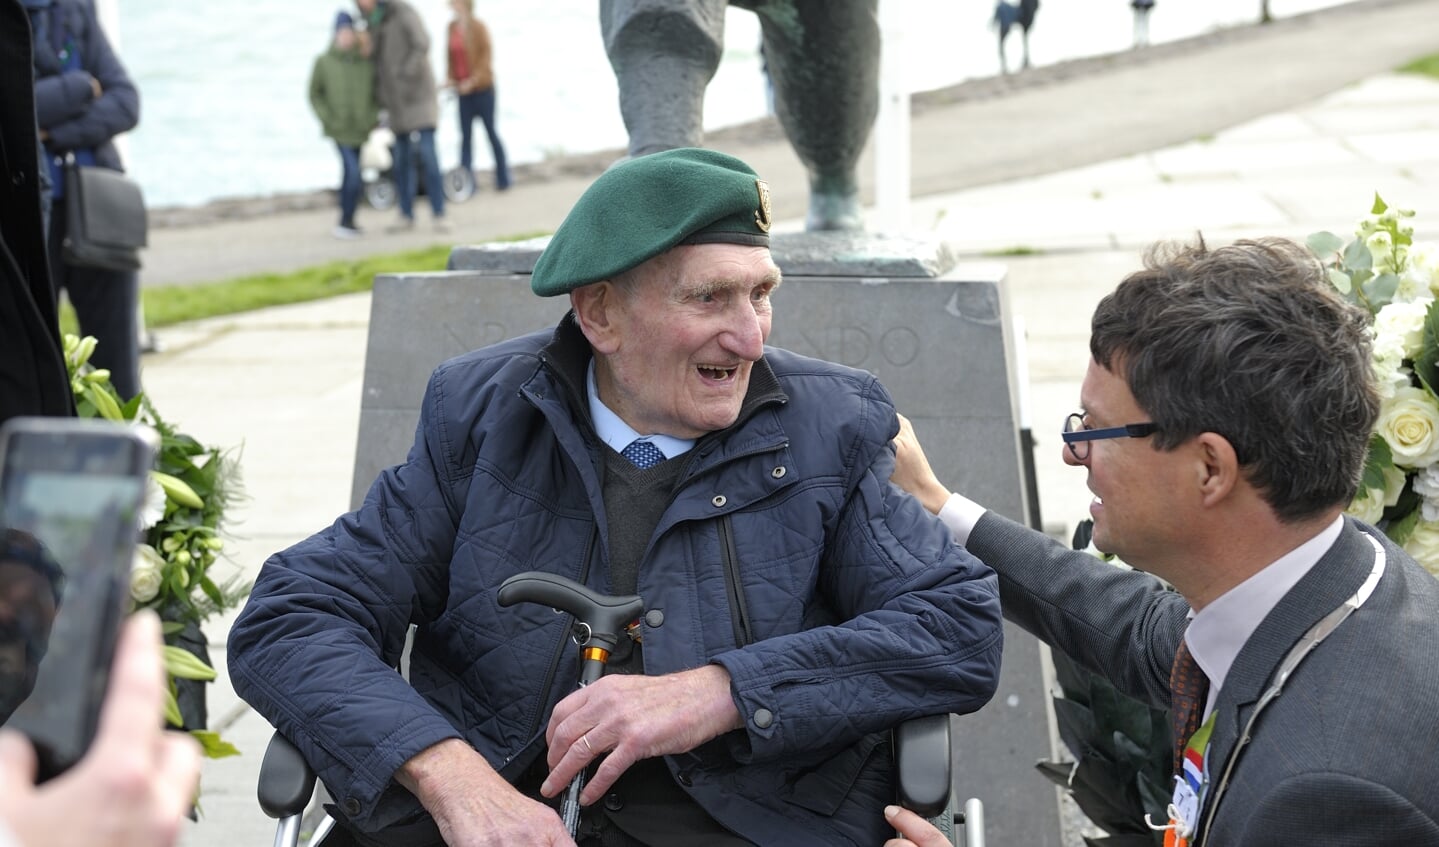 De Franse veteraan Felix Kerboas in gesprek met de Vlissingse burgemeester Bas van den Tillaar.